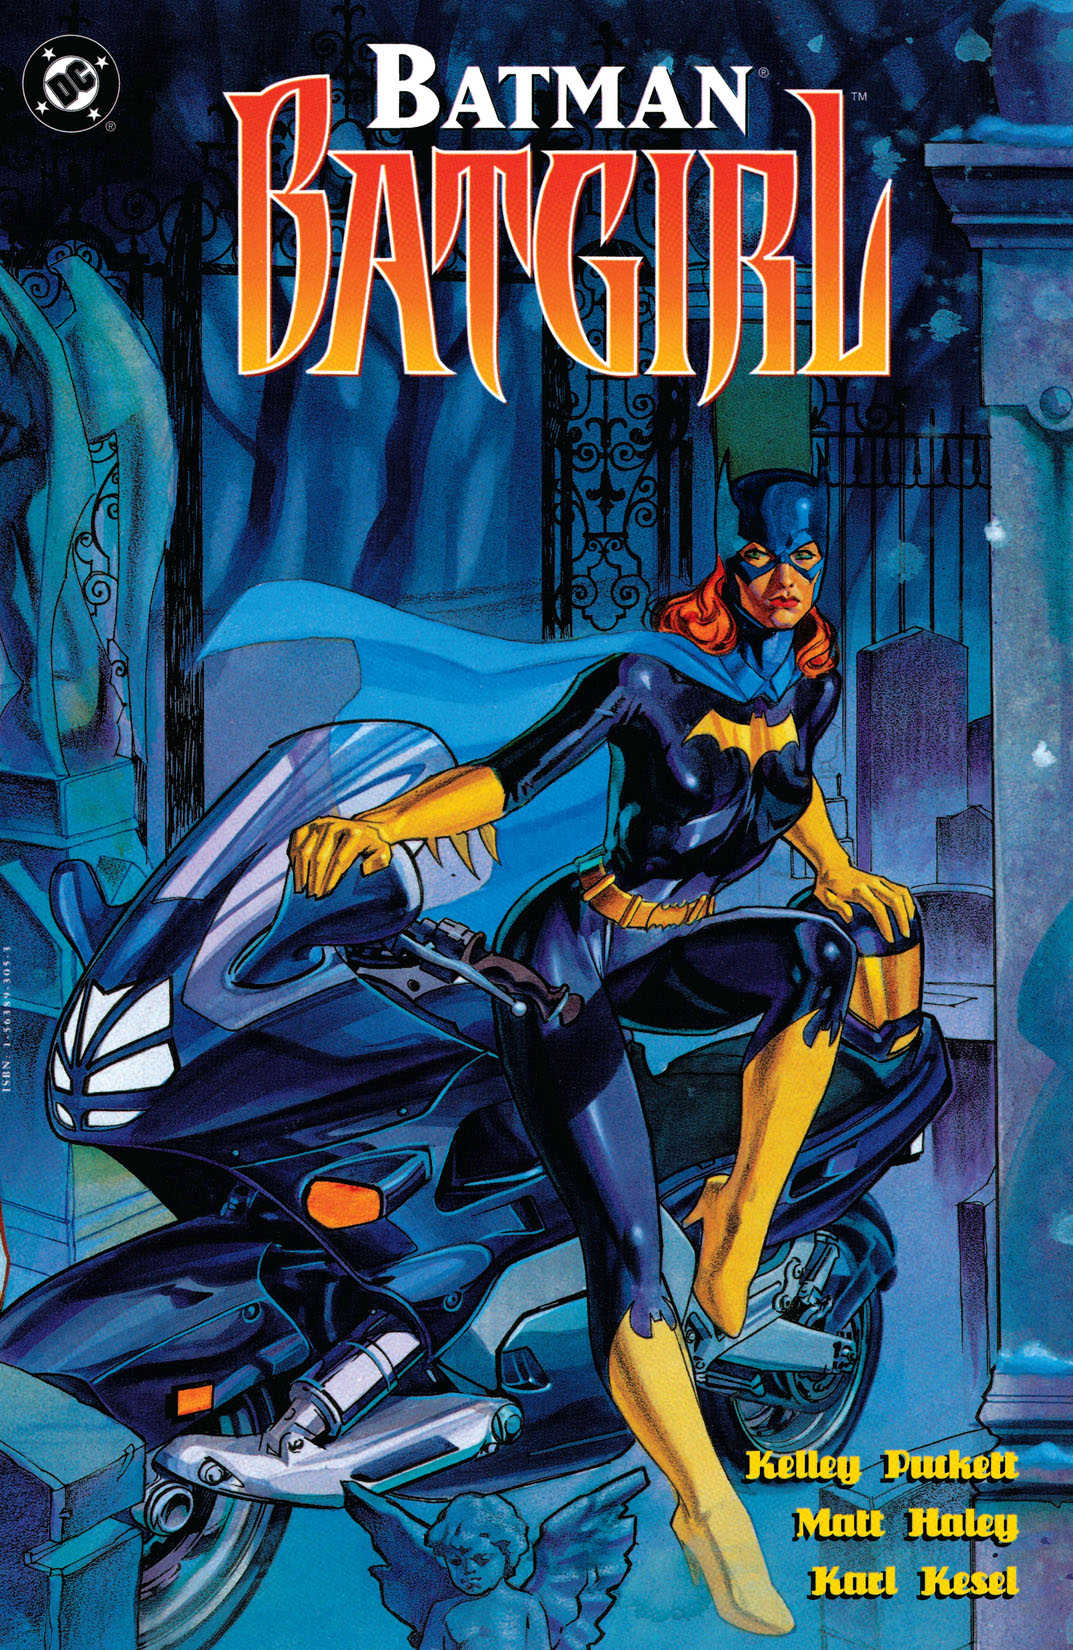 Batman: Batgirl #1 preview images